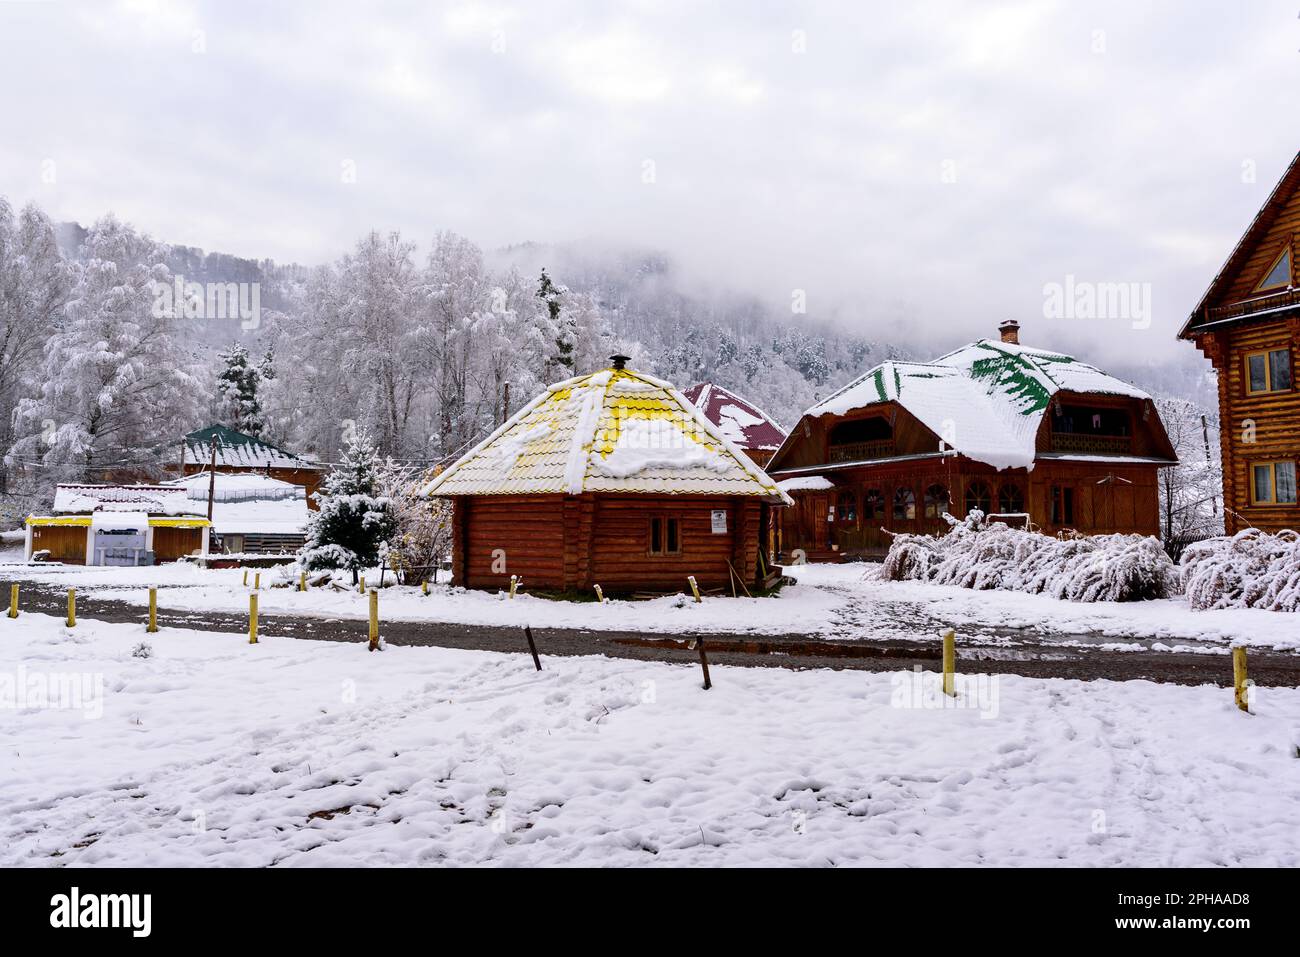 Ayla casa rotonda su un terreno giardino con alberi di betulla sullo sfondo di case in legno nella neve in inverno nella Altai in Siberia. Foto Stock